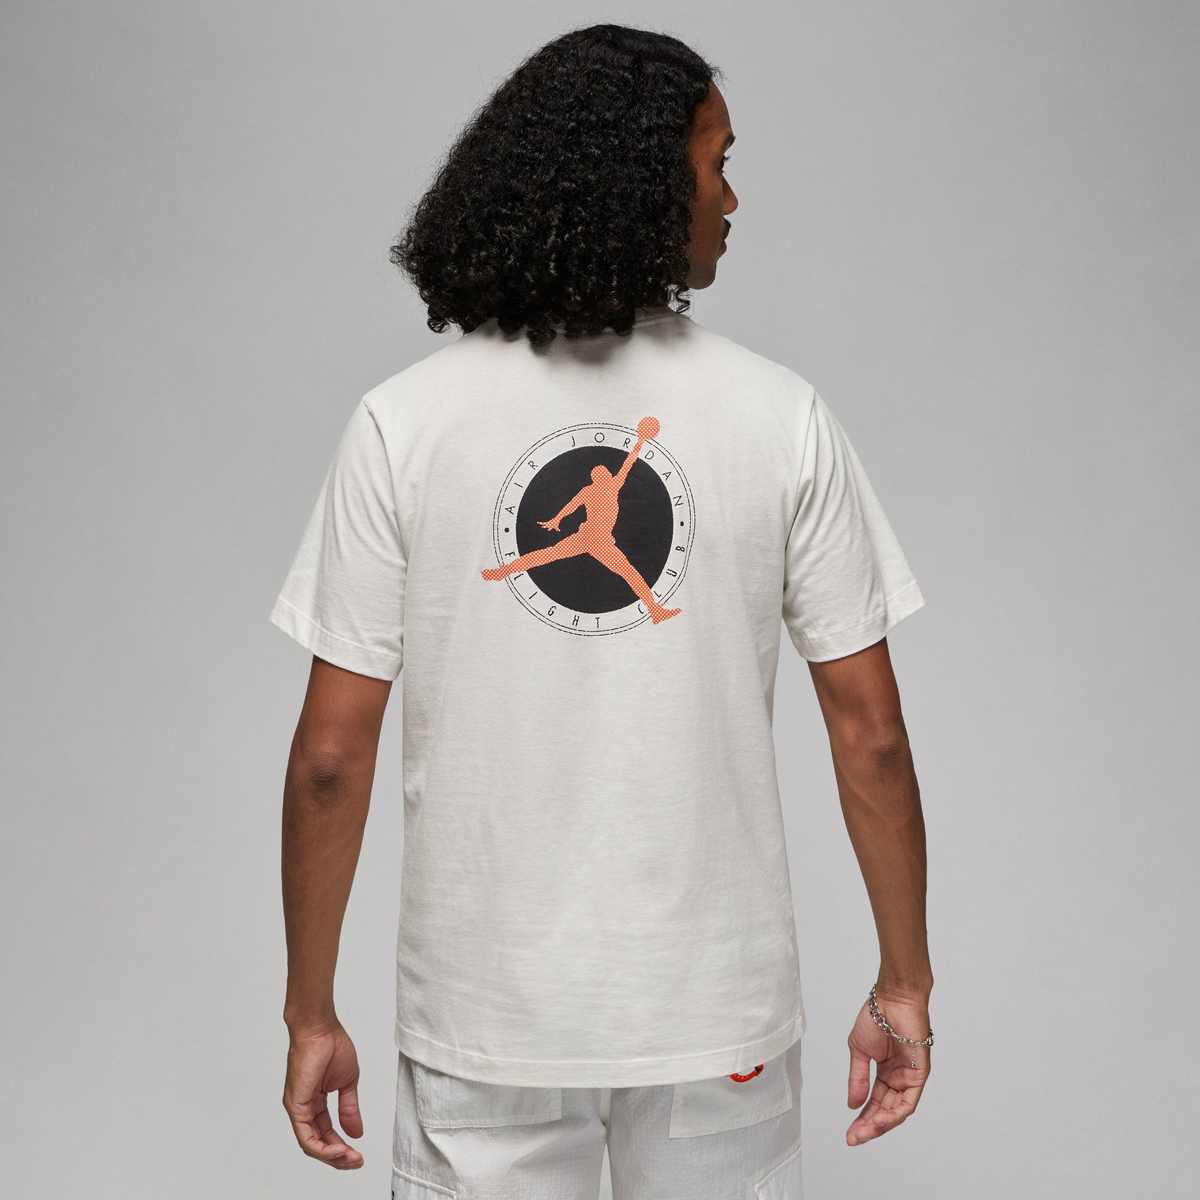 Air-Jordan-2-Low-Melon-Tint-Shirt-2